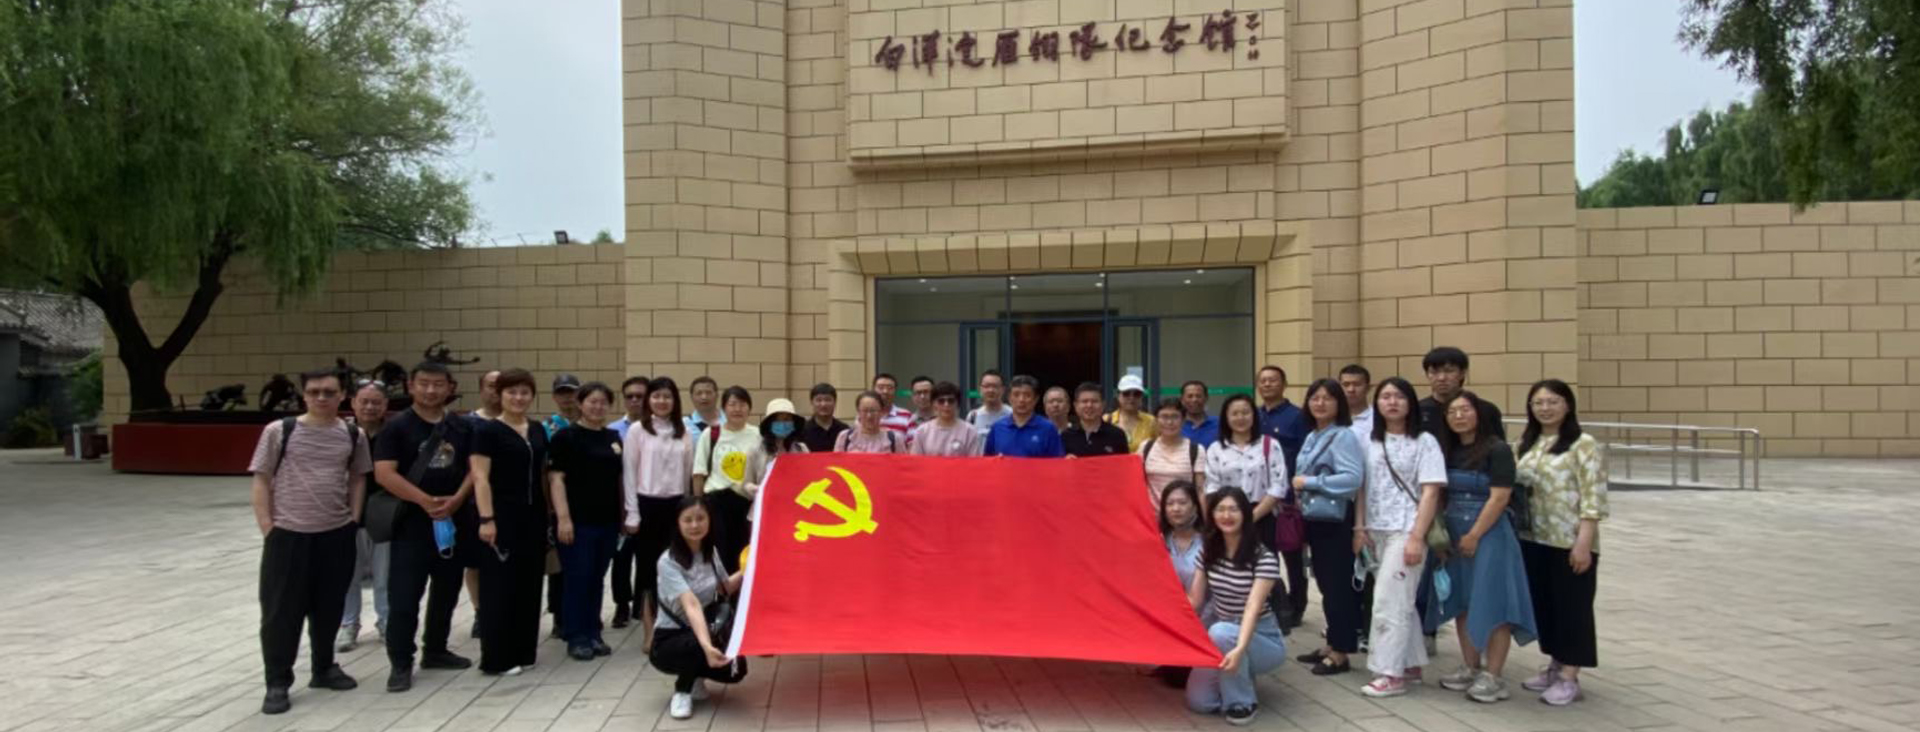 北京真空学会组织党员参观白洋淀雁翎队纪念馆 